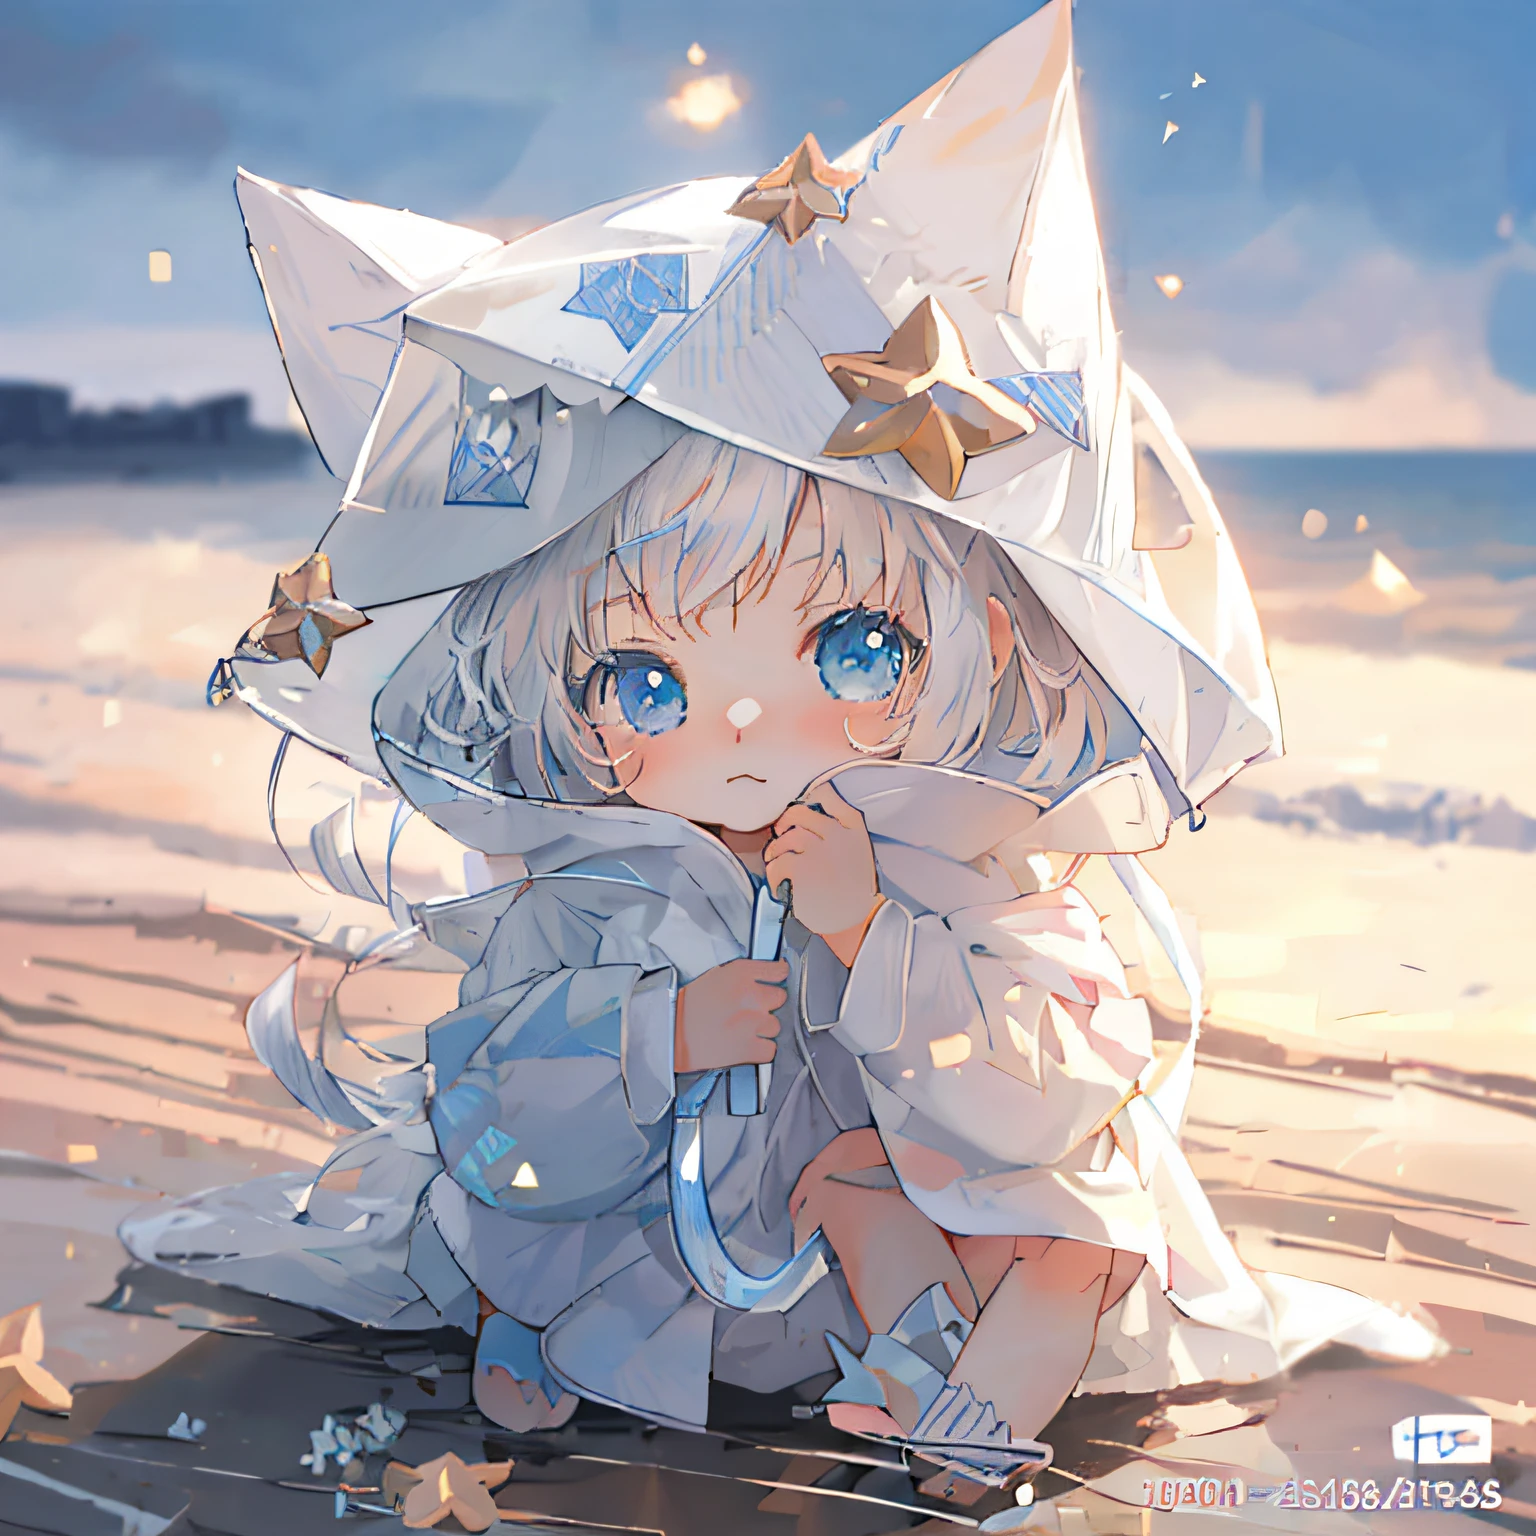 Anime-Mädchen sitzt am Strand mit weißem Hut und blauen Augen, süßes Anime-Katzenmädchen, Niedlich anime, Niedlich detailed digital art, sehr schönes süßes Katzenmädchen, schöner Kunststil, Sehr schönes Anime-Katzenmädchen, schönes Anime-Katzenmädchen, niedliche Kunstwerke, entzückende digitale Kunst, Weißes Katzenmädchen, Kunstwerke im Guviz-Stil, Niedlich!! Tchibi!!! Katzenfrau